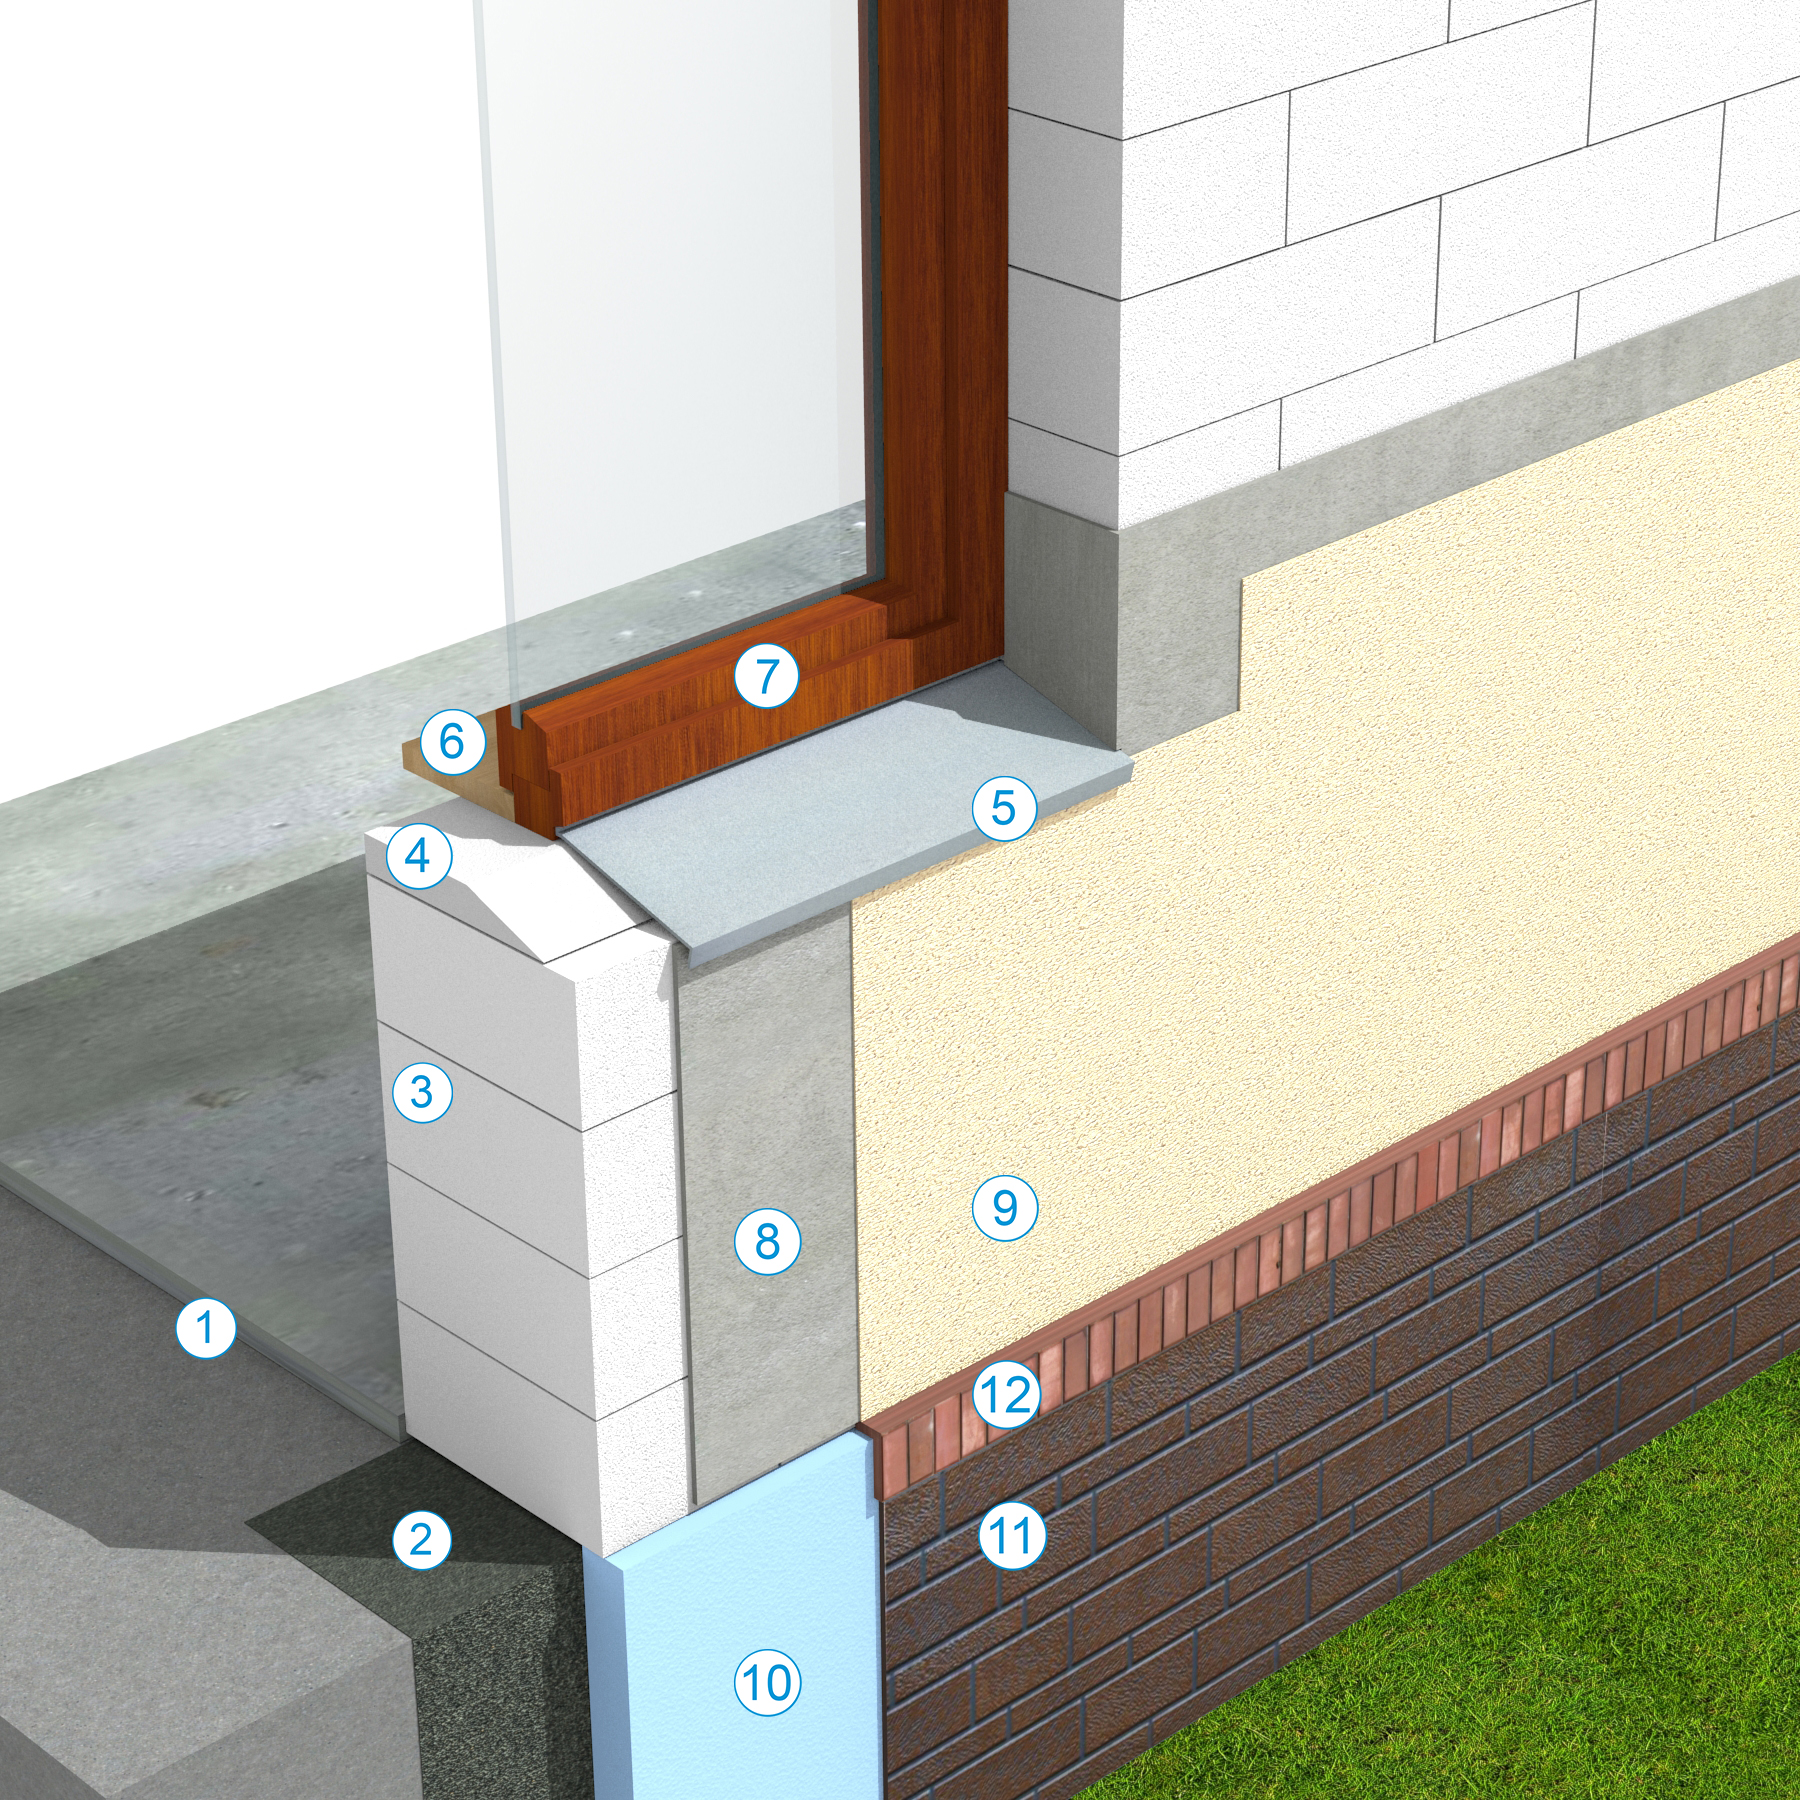 Detaliu de parapet - Sistem de zidarie confinata din BCA Macon pentru constructii rezidentiale publice si